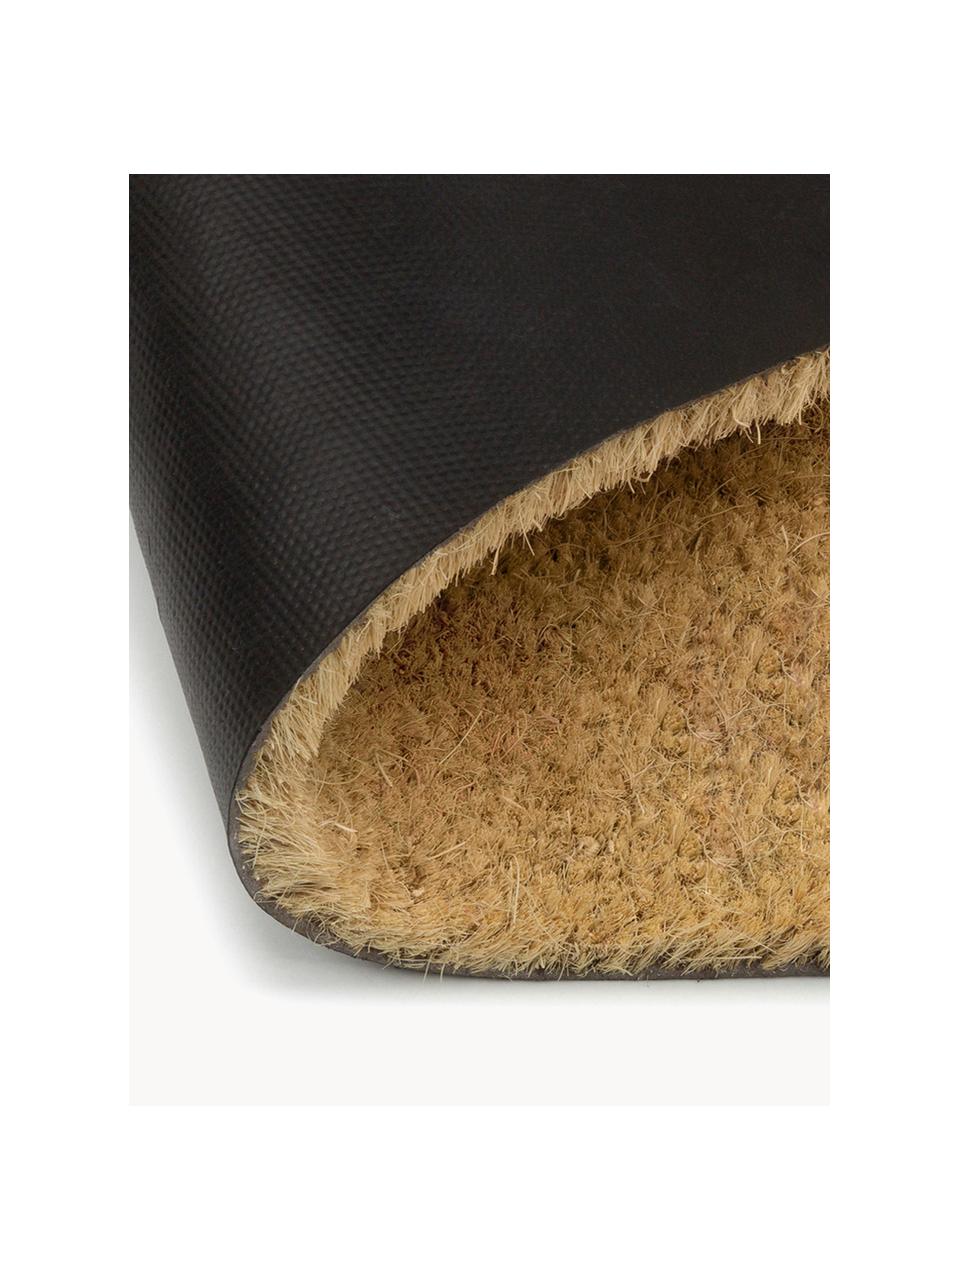 Zerbino in fibra di cocco con cani Dachshund, Retro: PVC, Marrone chiaro, nero, Larg. 40 x Lung. 60 cm